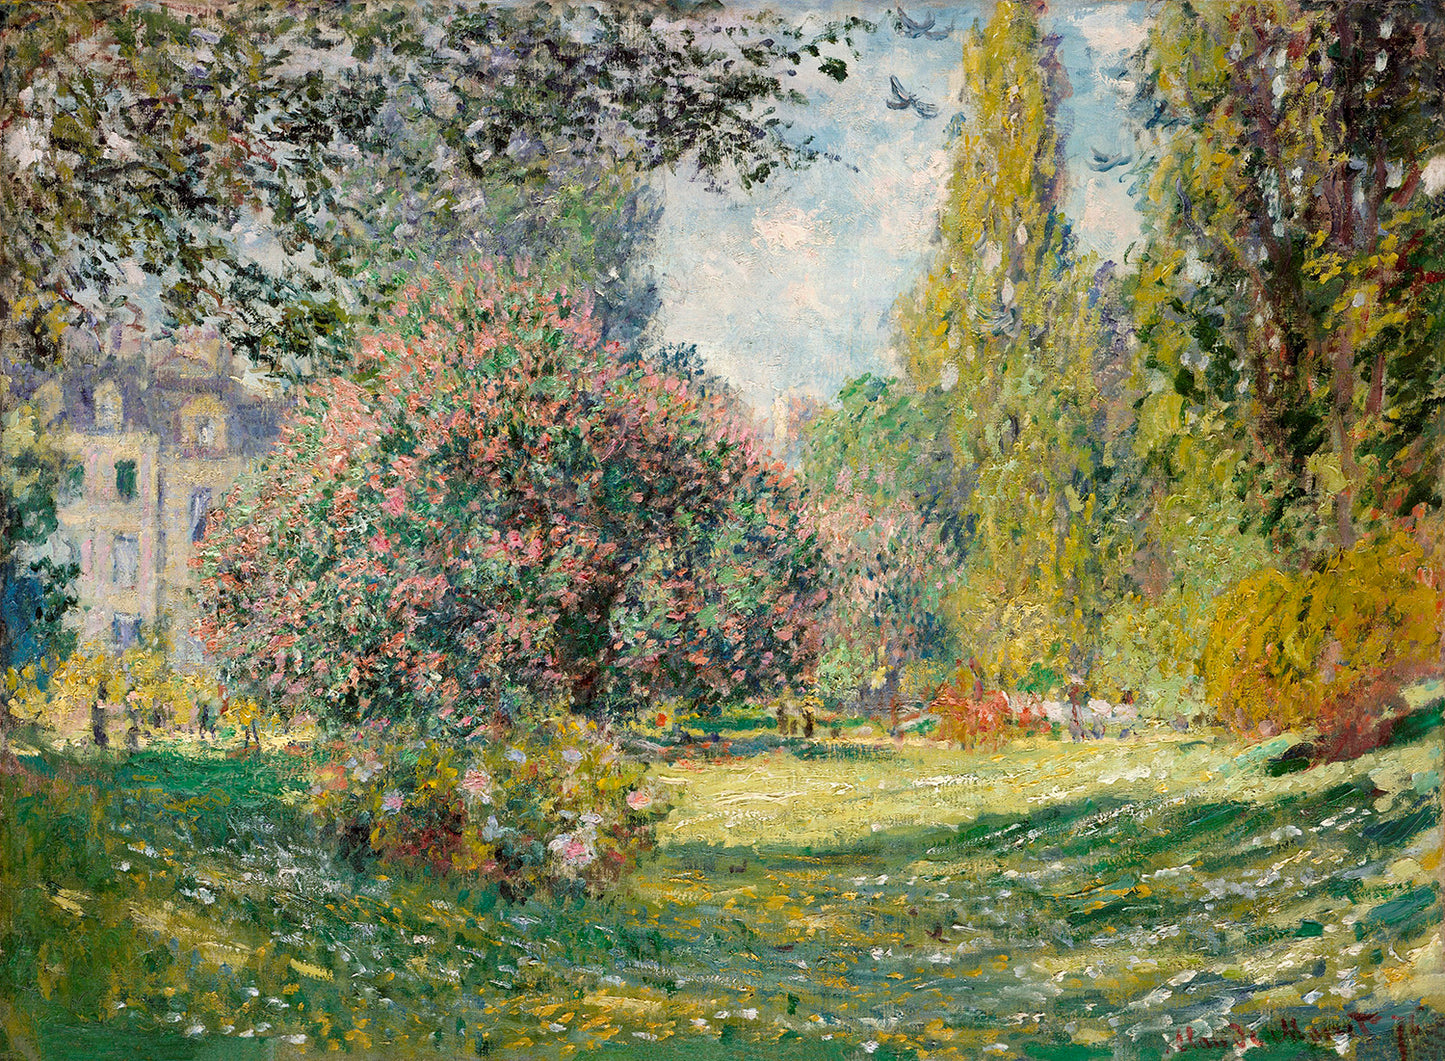 Landscape: The Parc Monceau by Claude Monet